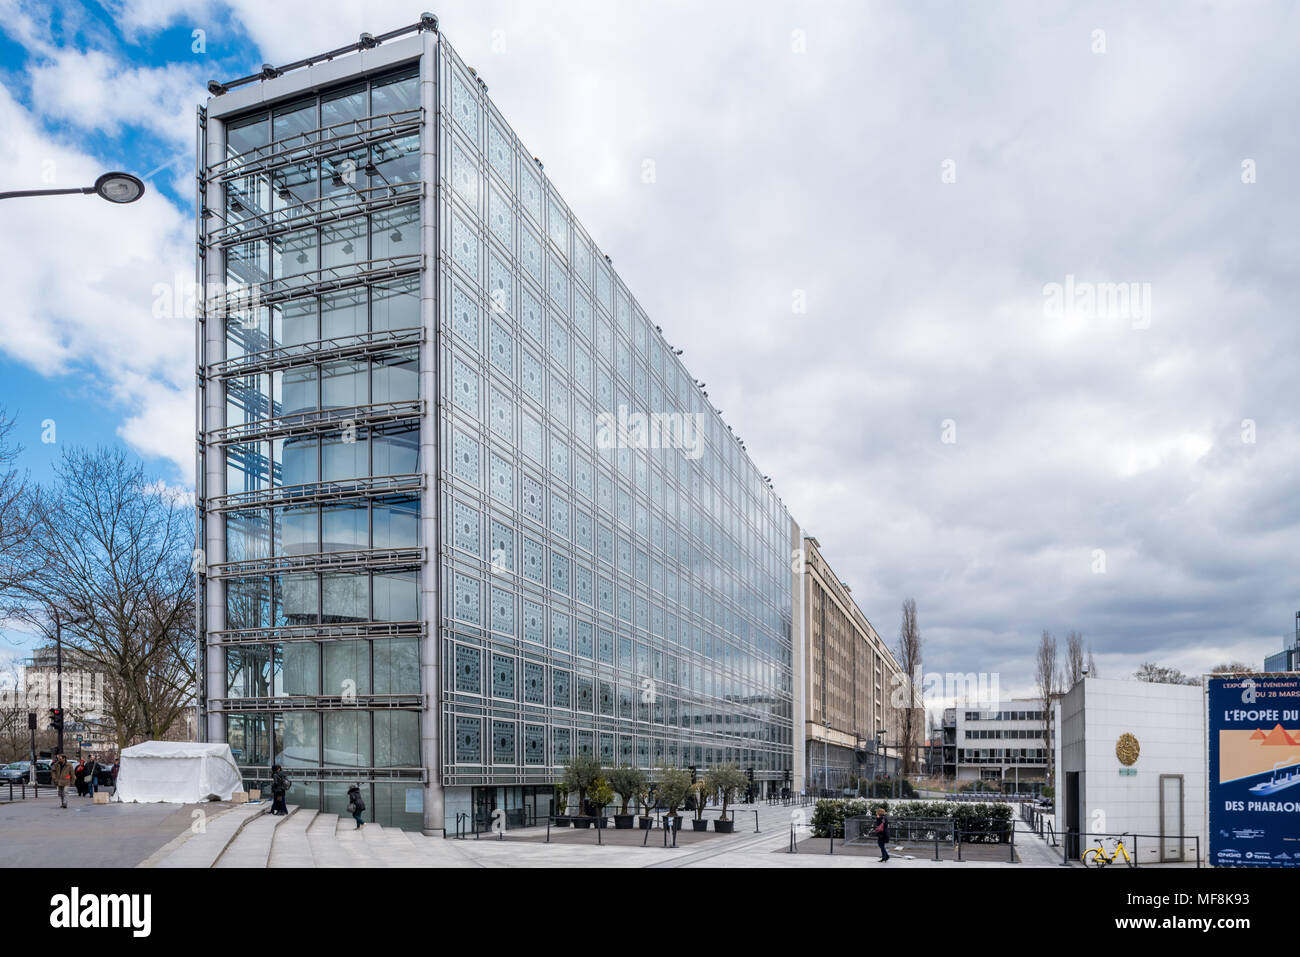 France, Paris - 5 april 2018: Institut du Monde Arabe designed by French architect Jean Mouvel Stock Photo